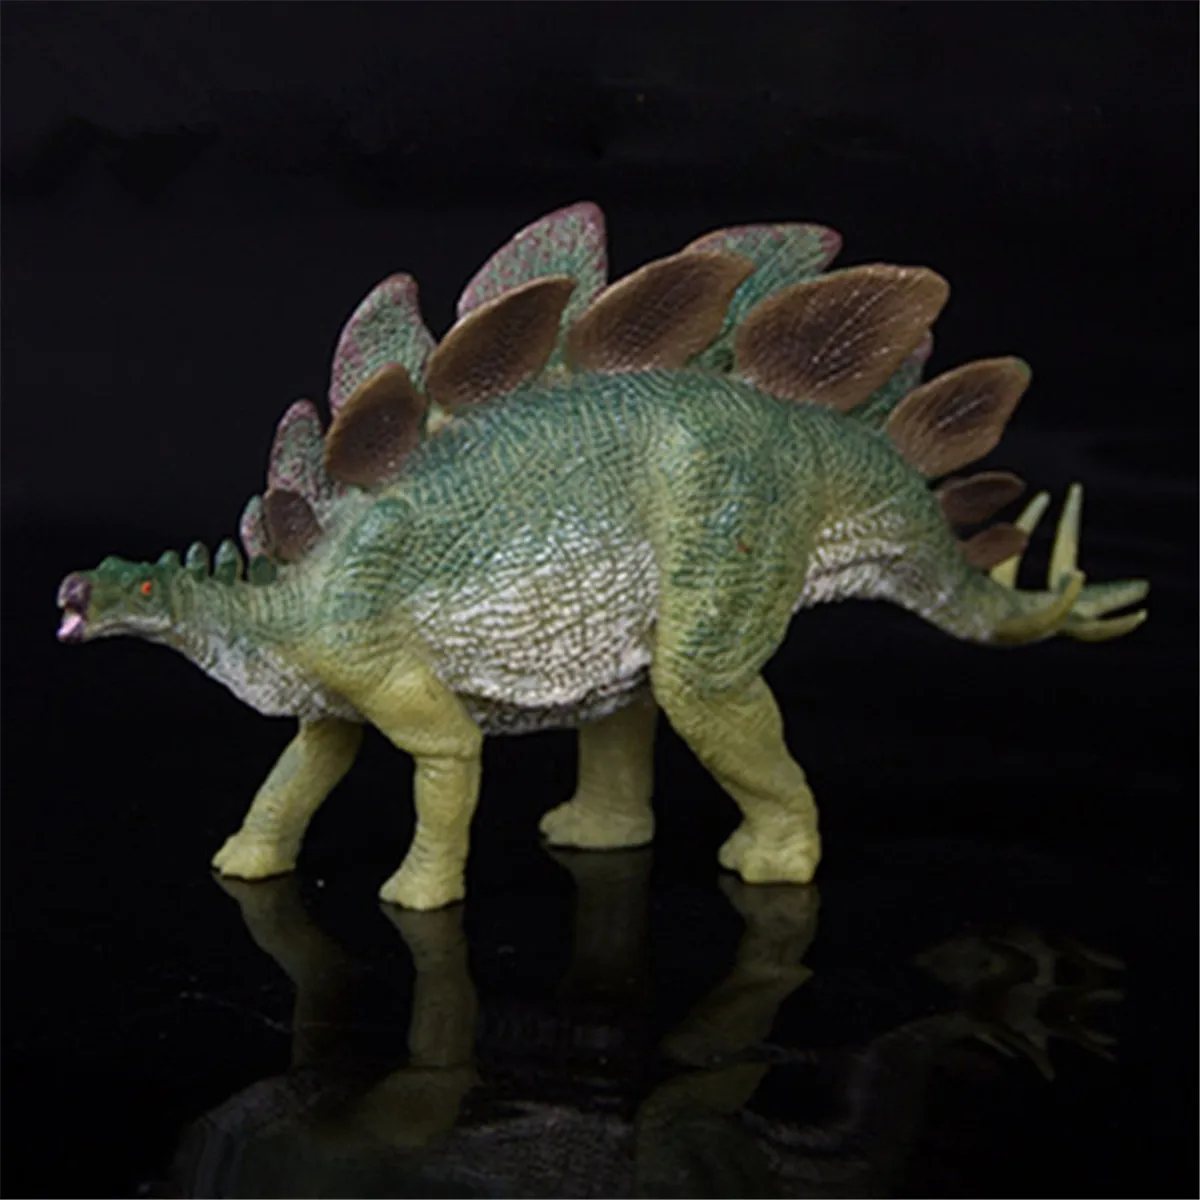 Jurassic Дикая жизнь динозавр игрушка Стегозавр ПВХ игрушки для игр мировой парк динозавр модель фигурки дети мальчик подарок